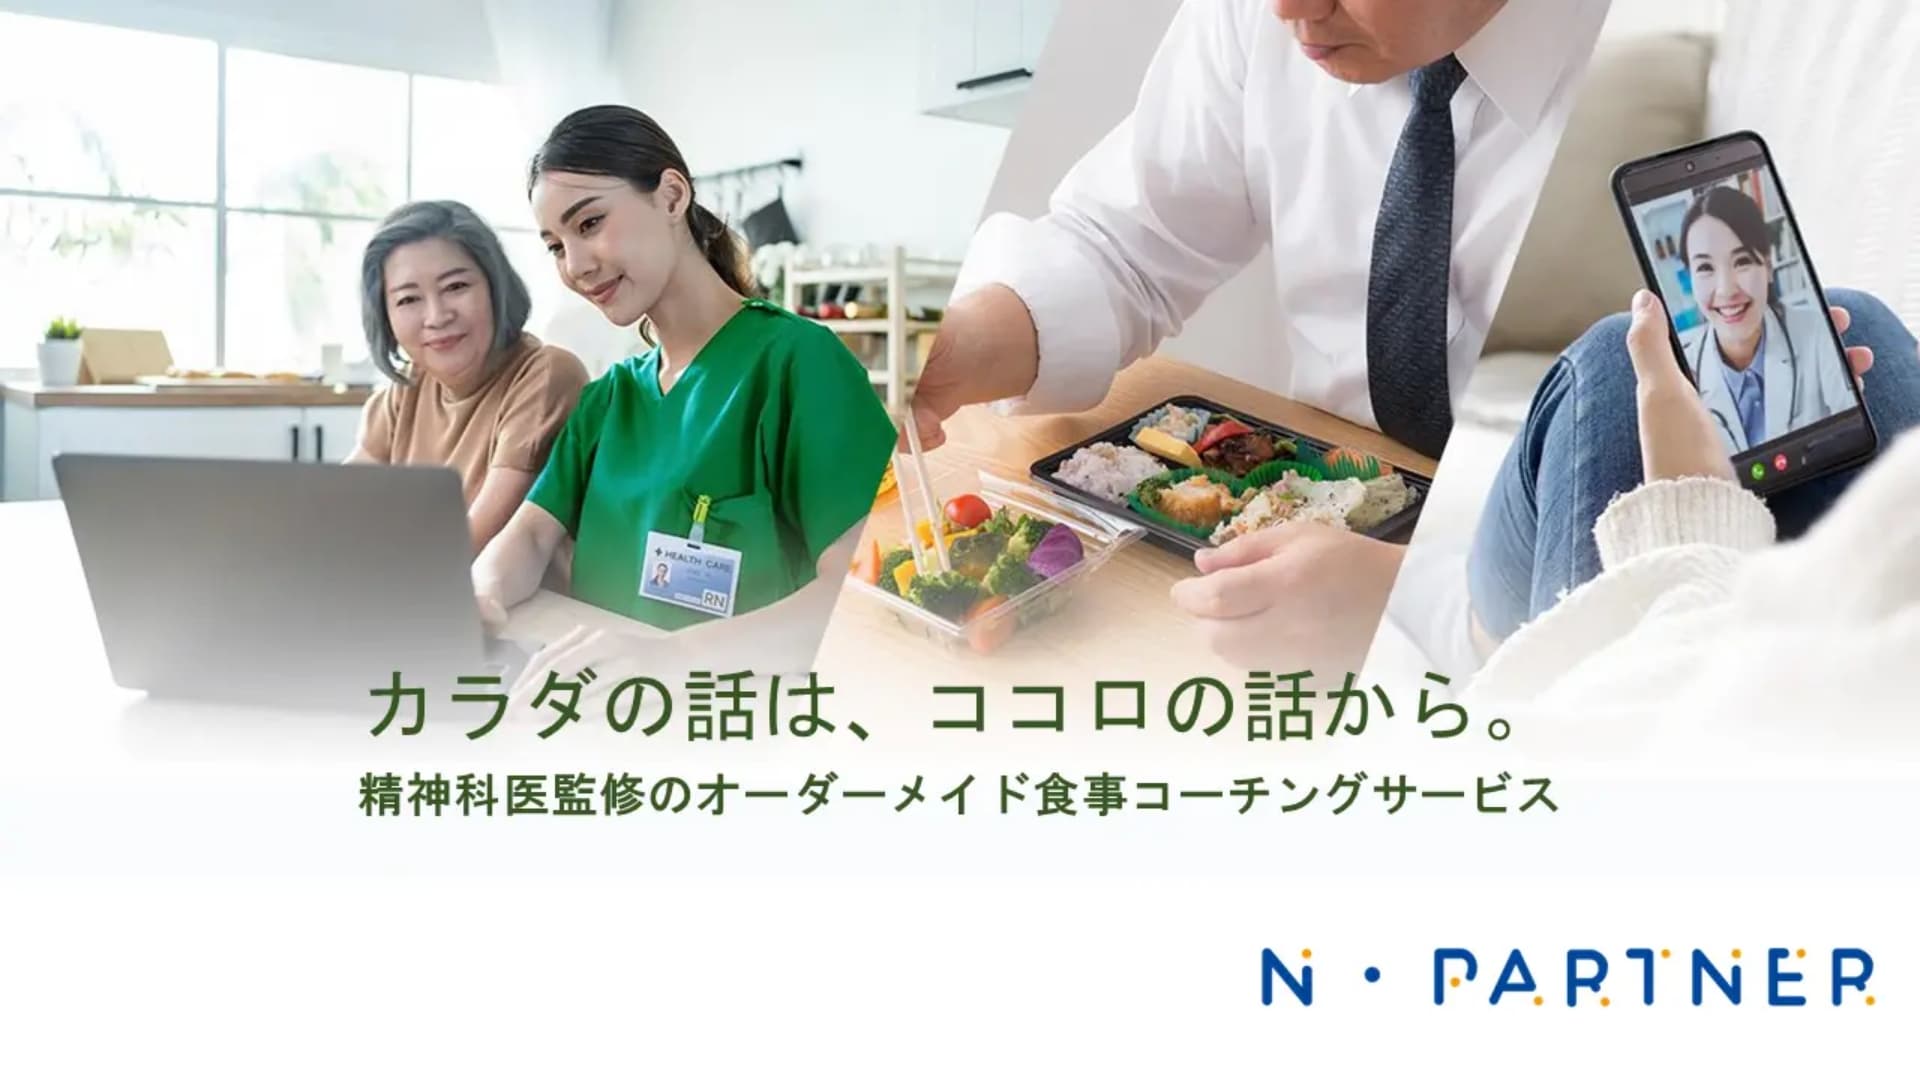 精神科医×AIの食事コーチングサービス「N・Partner（ニューパートナー）」を展開するタウンドクター株式会社が1.5億円の資金調達